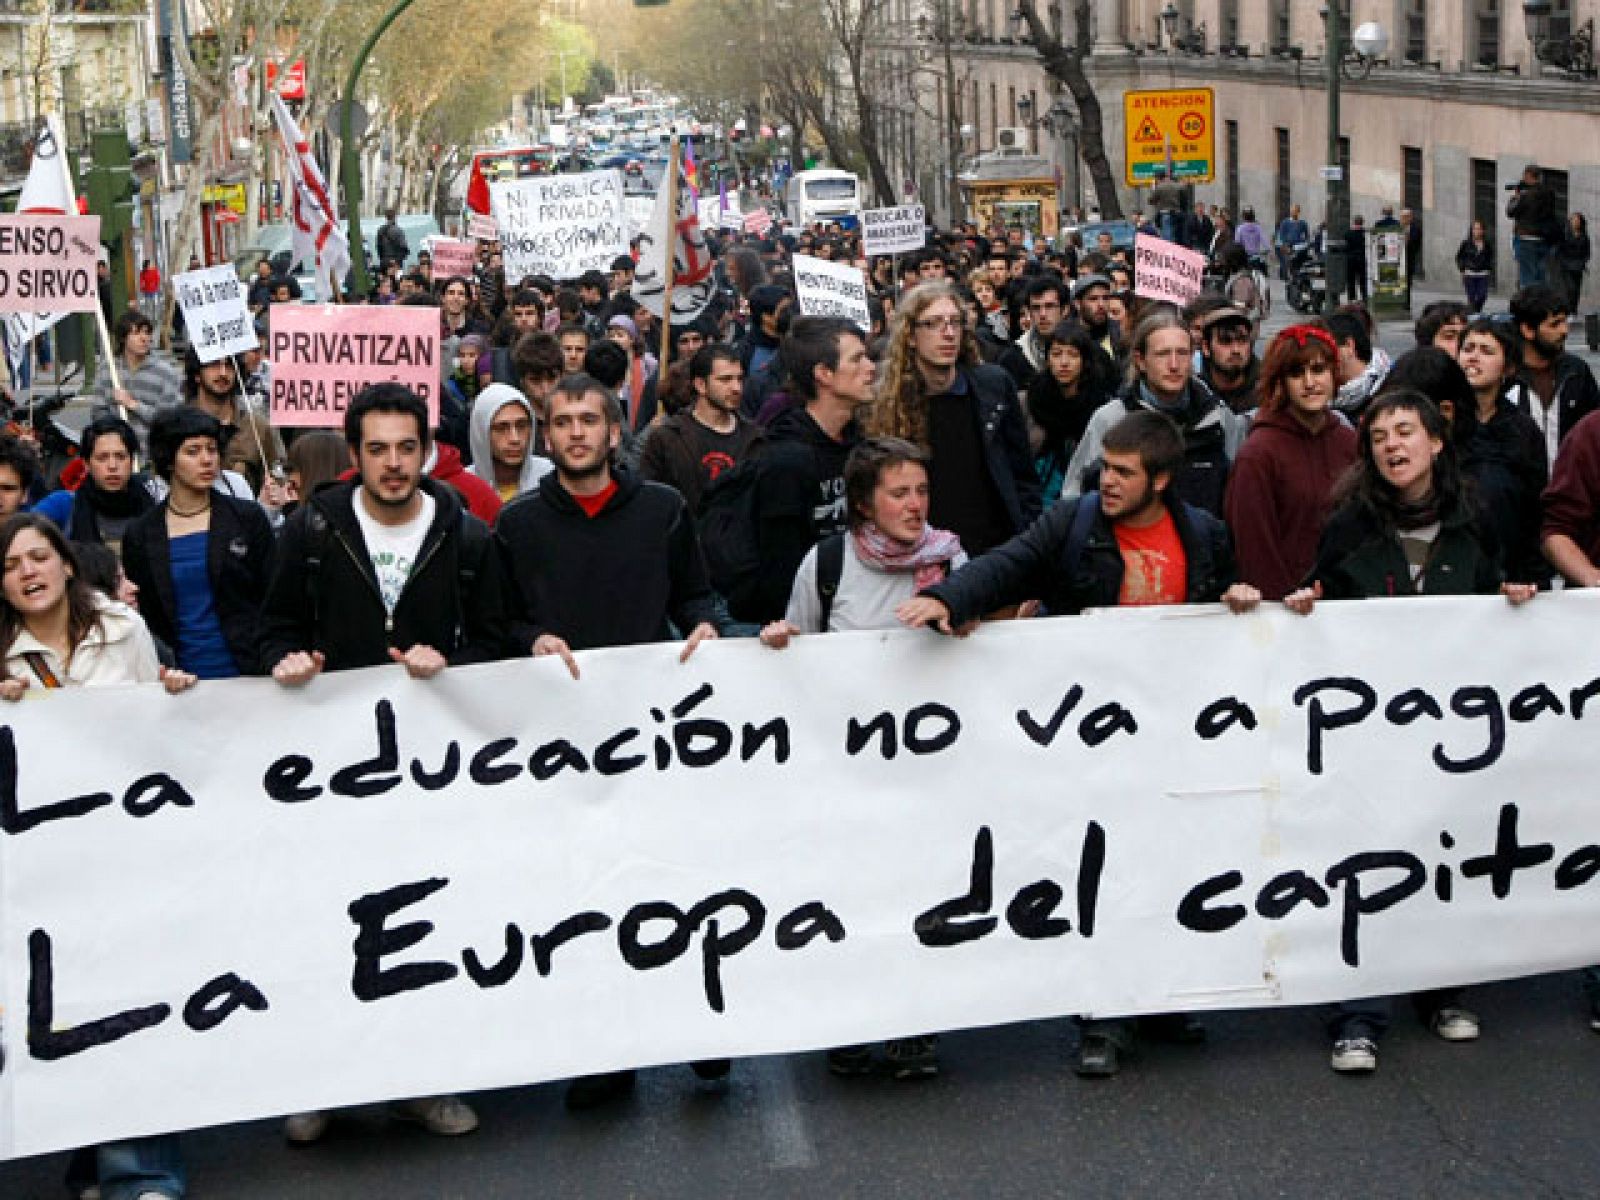 Su lema: "La educación no va a pagar la Europa del Capital. Que no decidan por ti".